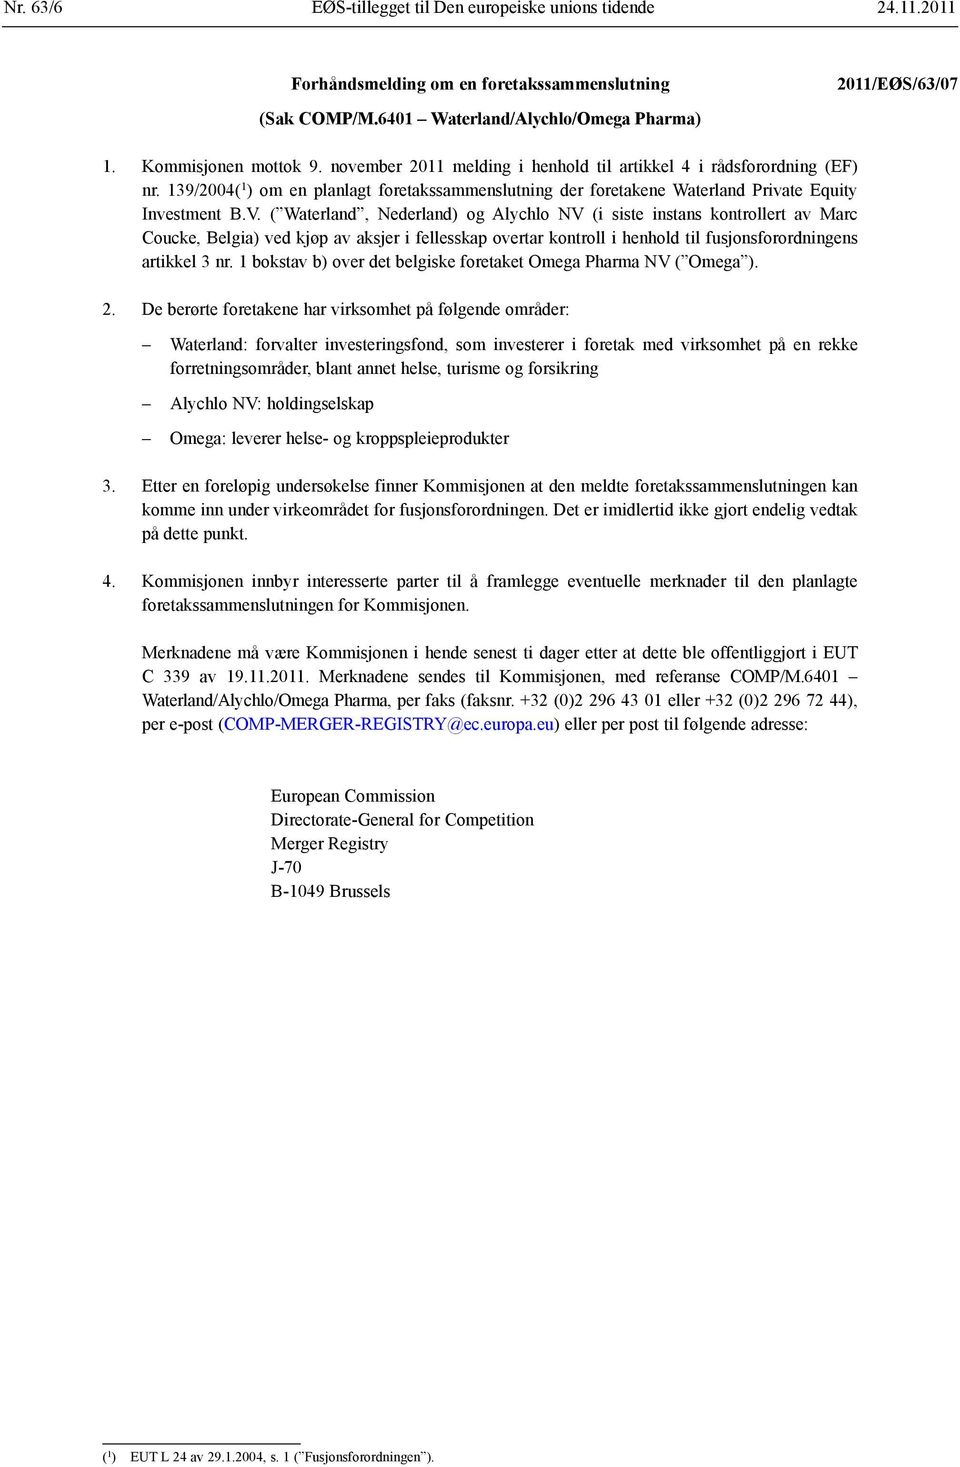 V. ( Waterland, Nederland) og Alychlo NV (i siste instans kontrollert av Marc Coucke, Belgia) ved kjøp av aksjer i fellesskap overtar kontroll i henhold til fusjonsforordningens artikkel 3 nr.